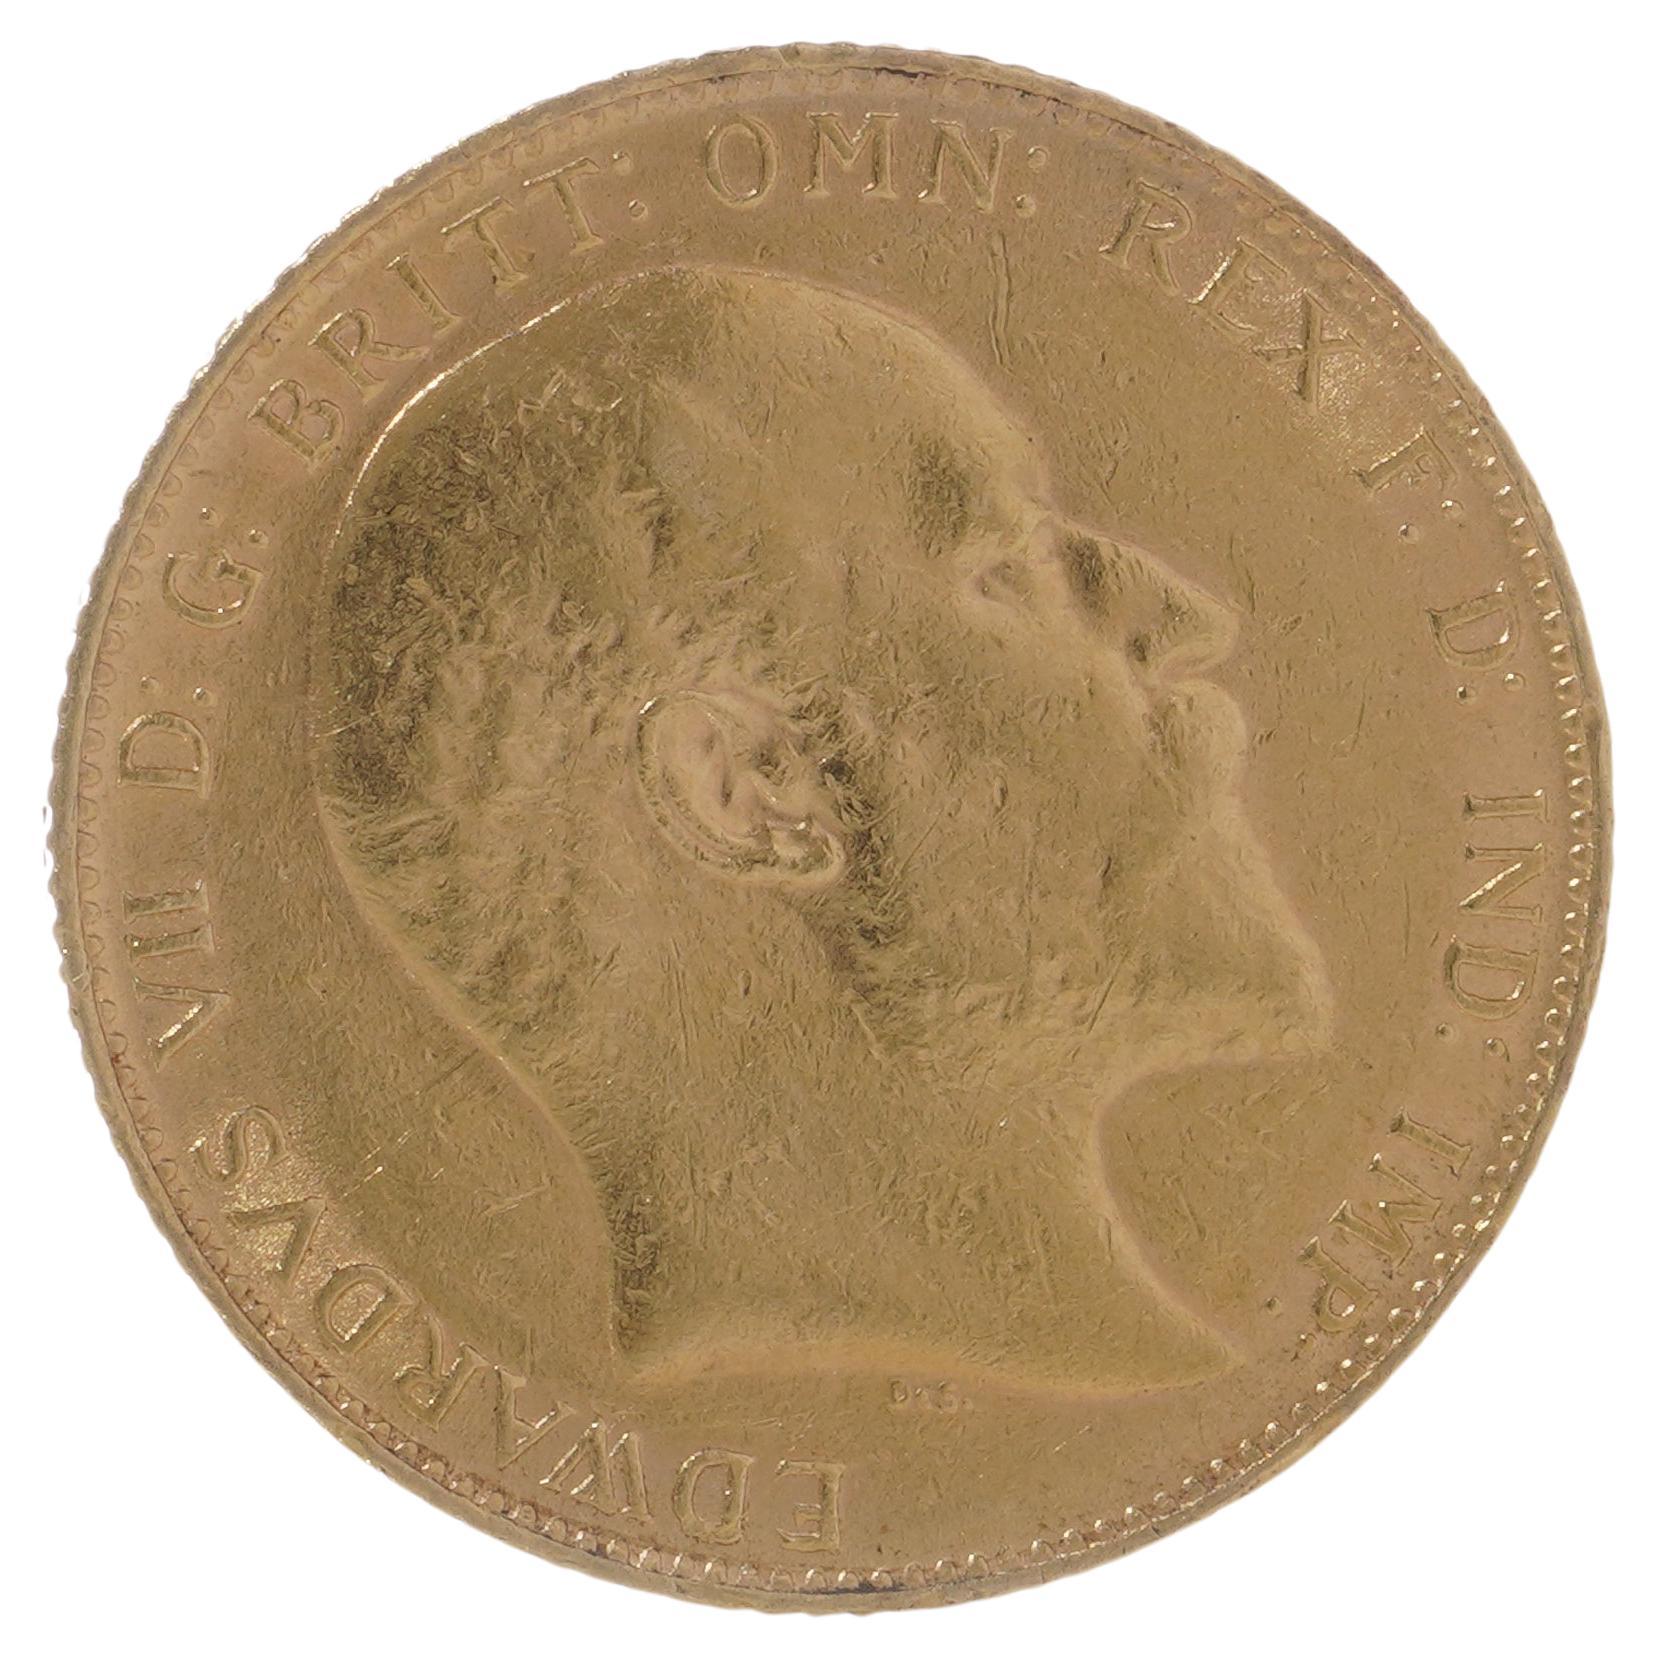 Goldsobereignis von 1909 – König Edward VII.